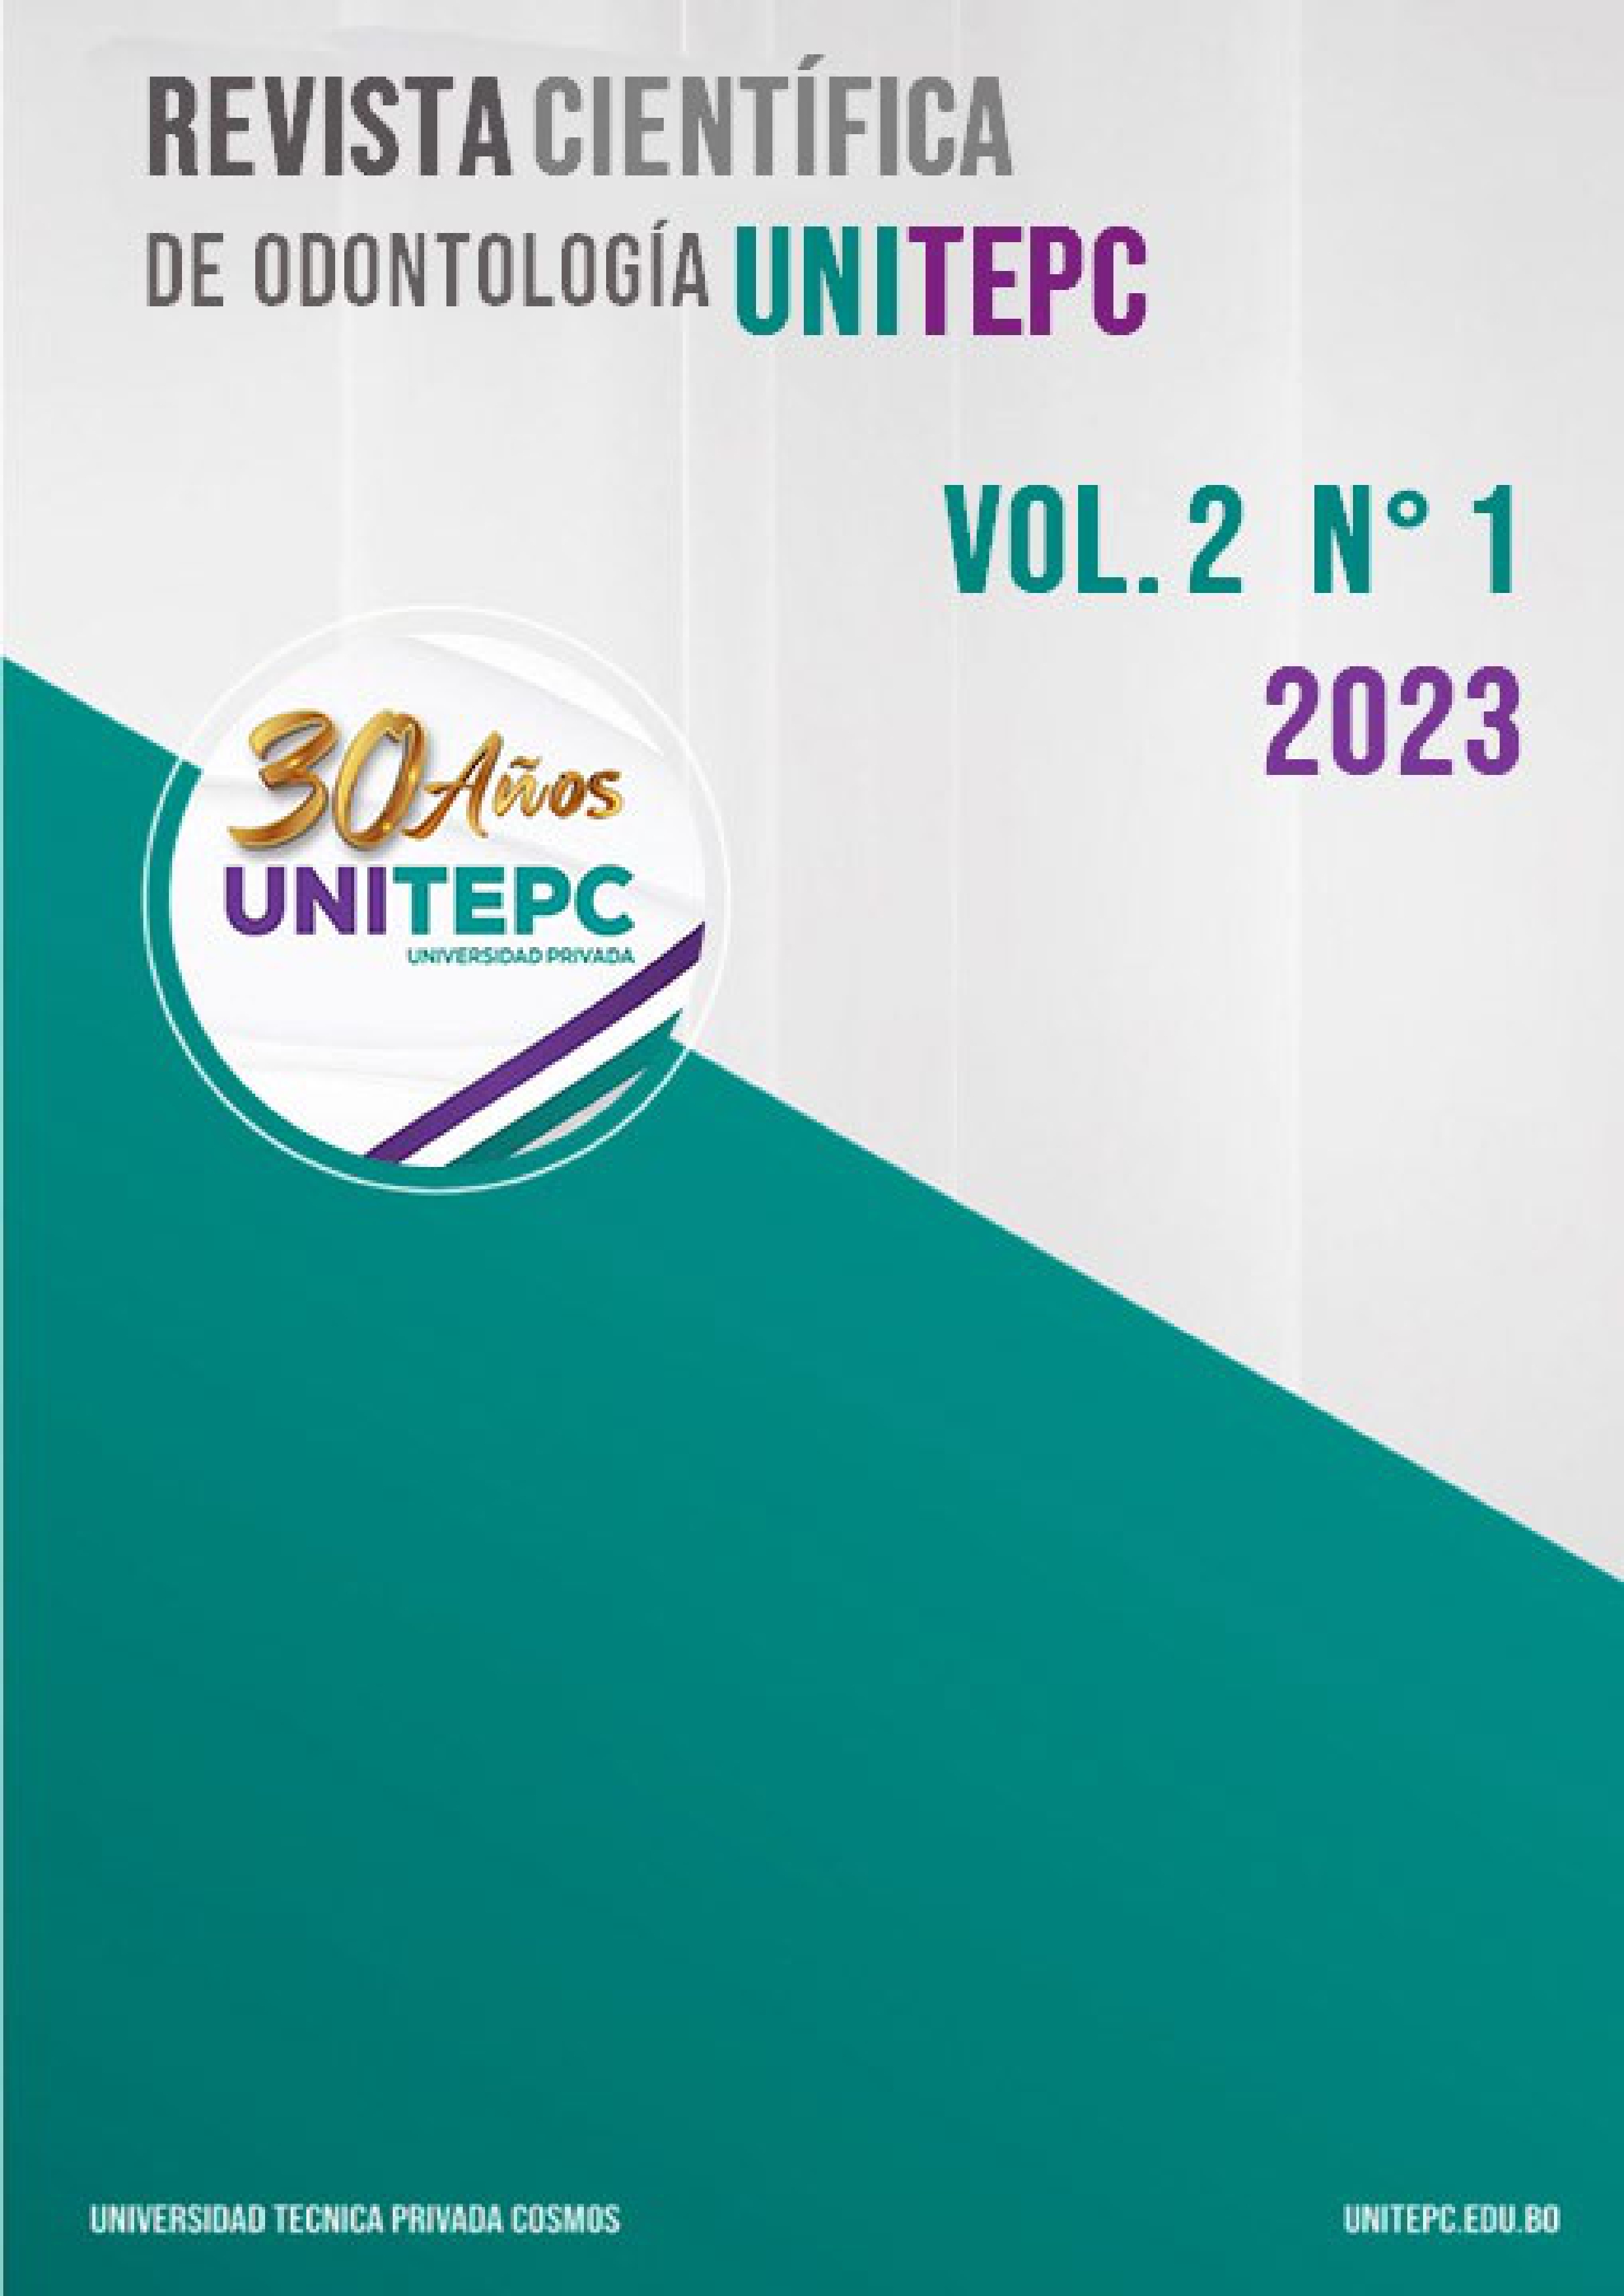 					View Vol. 2 No. 1 (2023): Revista Científica de Odontología UNITEPC
				